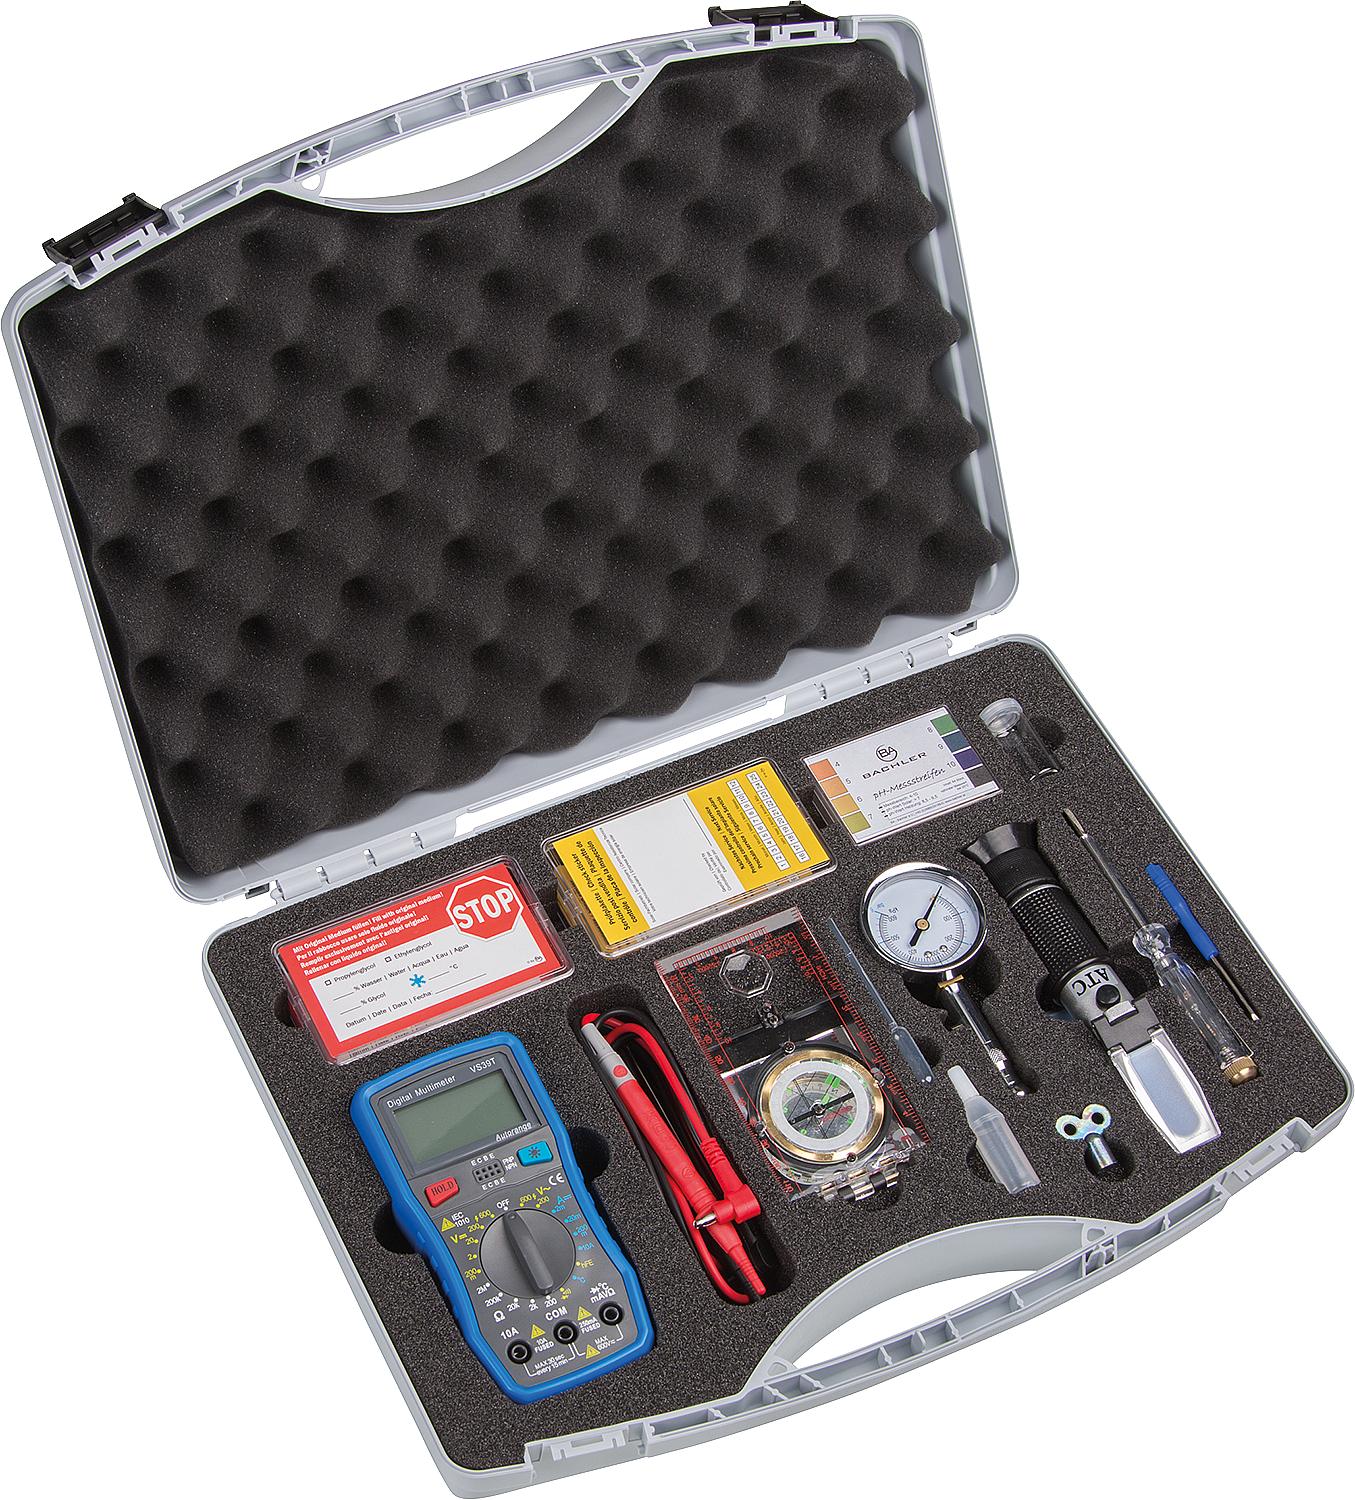 asdec life ® Solarprüfkoffer mit Handrefraktometer, Kompass Multimeter, Prüfstreifen